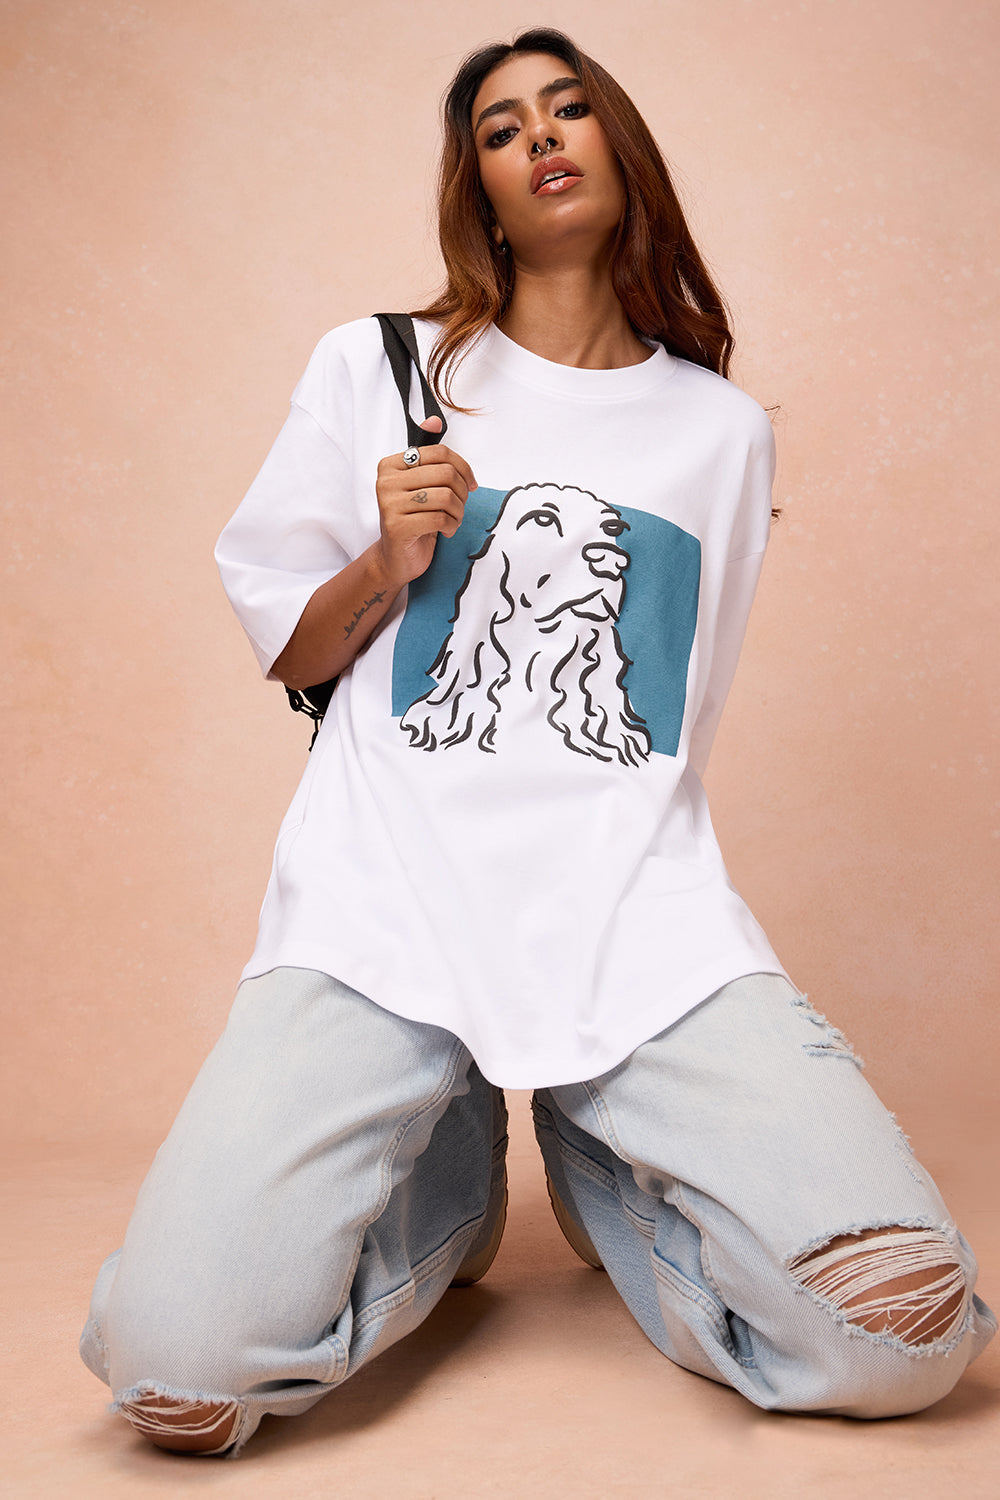 Women's Hope for Dog T-shirt